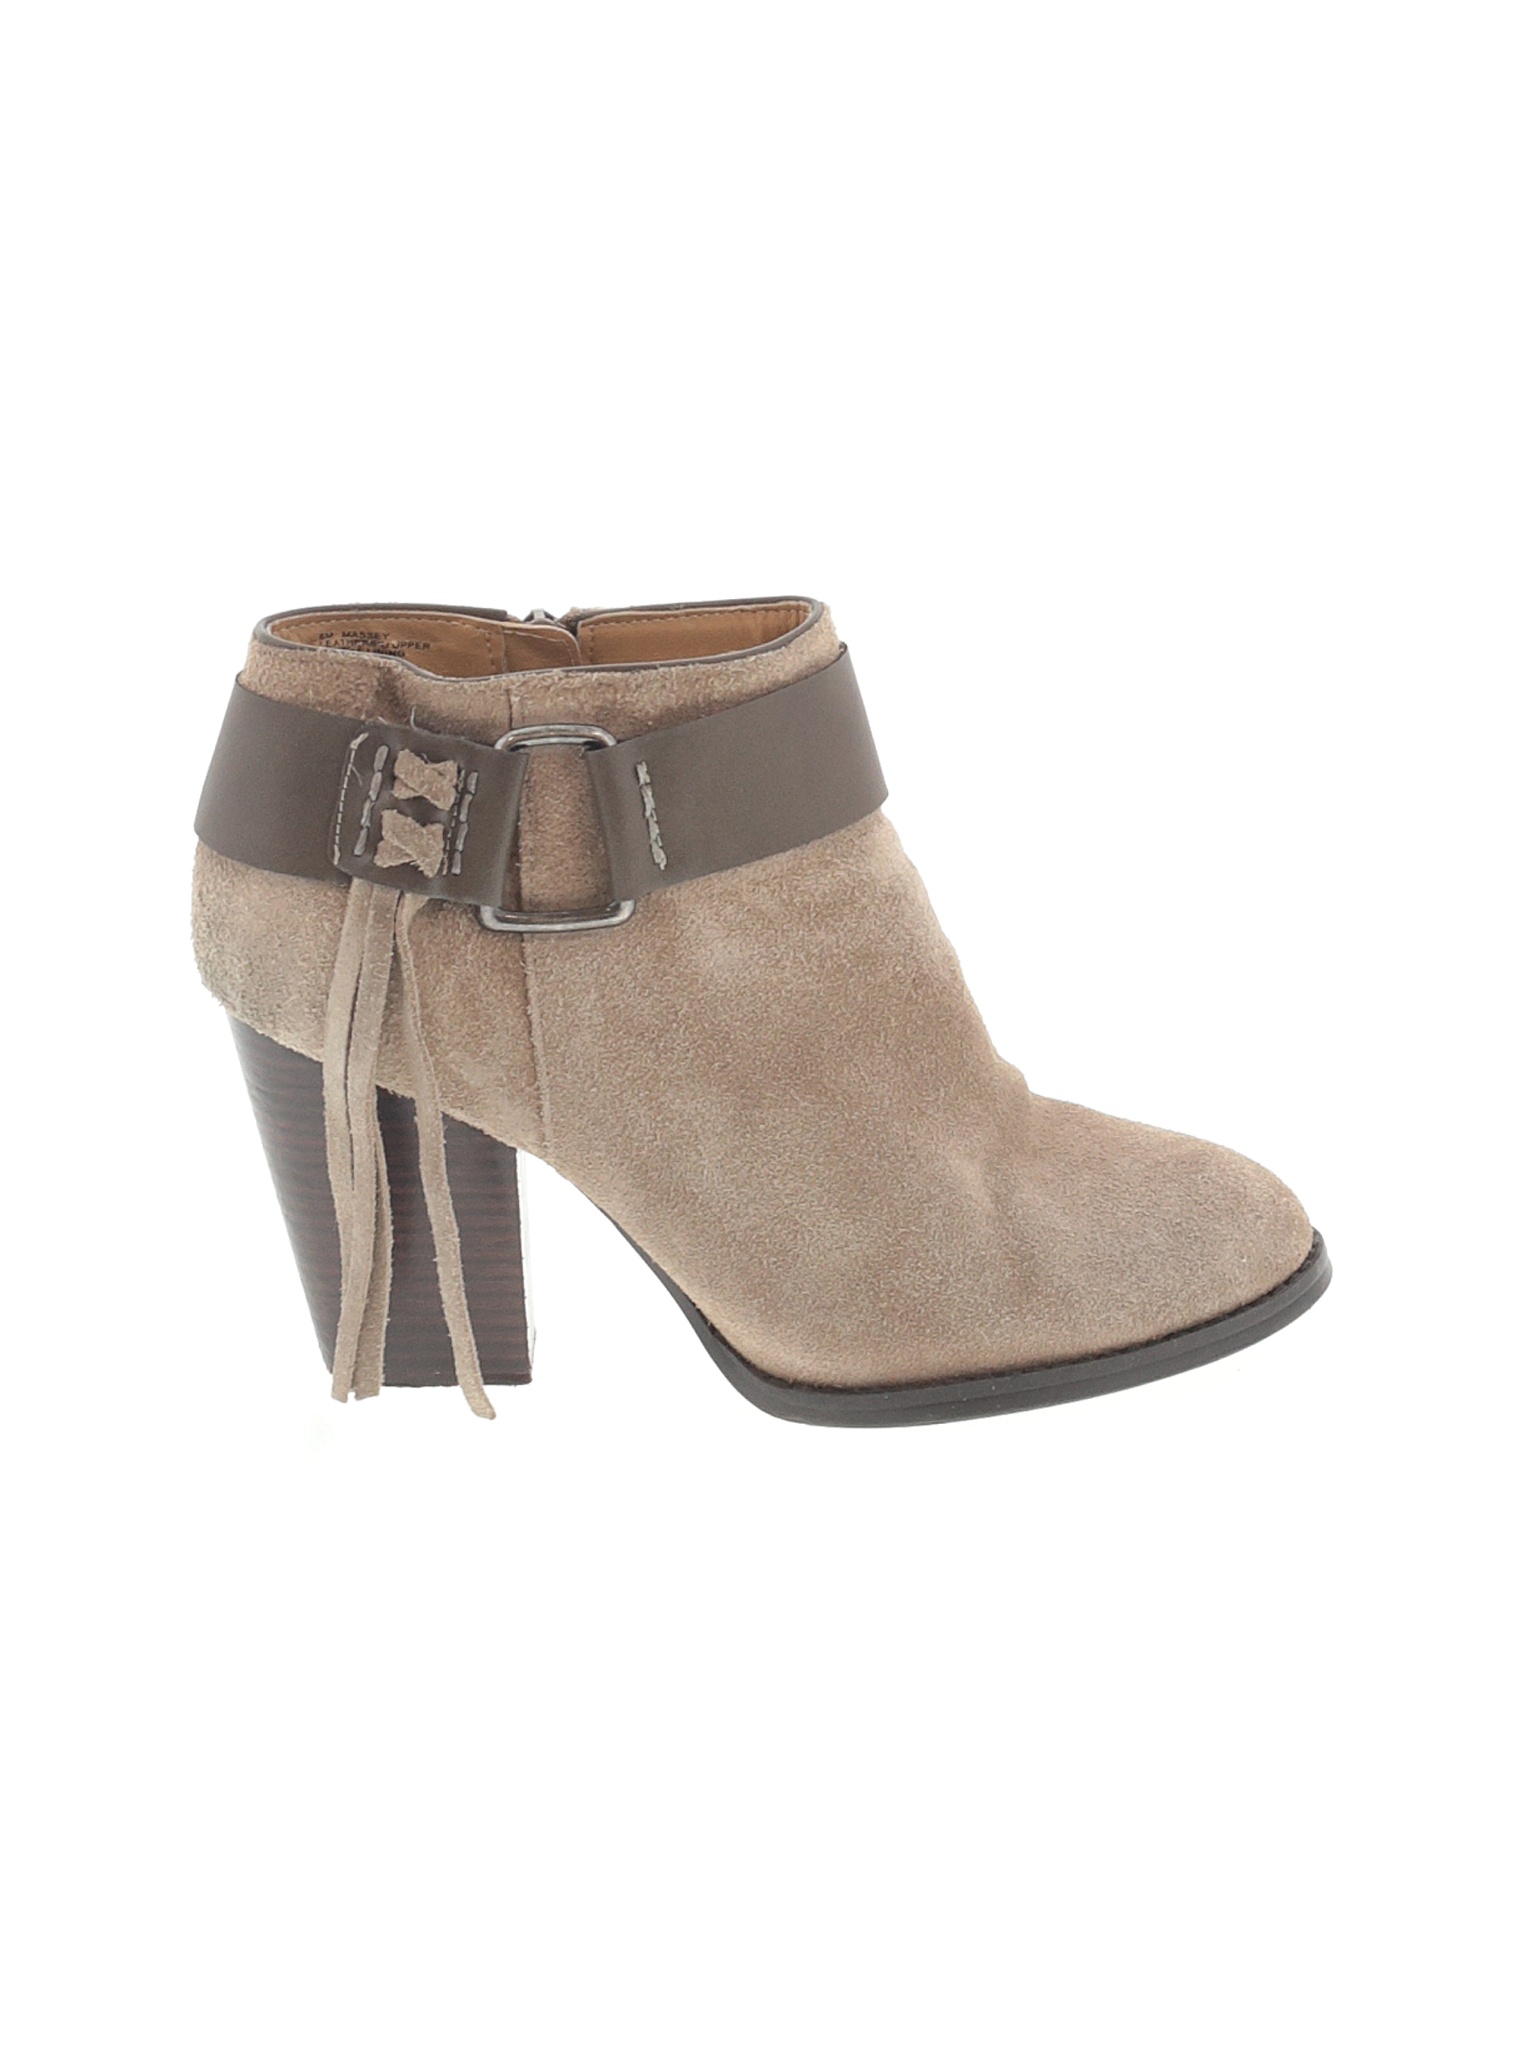 Kensie Women Brown Ankle Boots US 8 | eBay